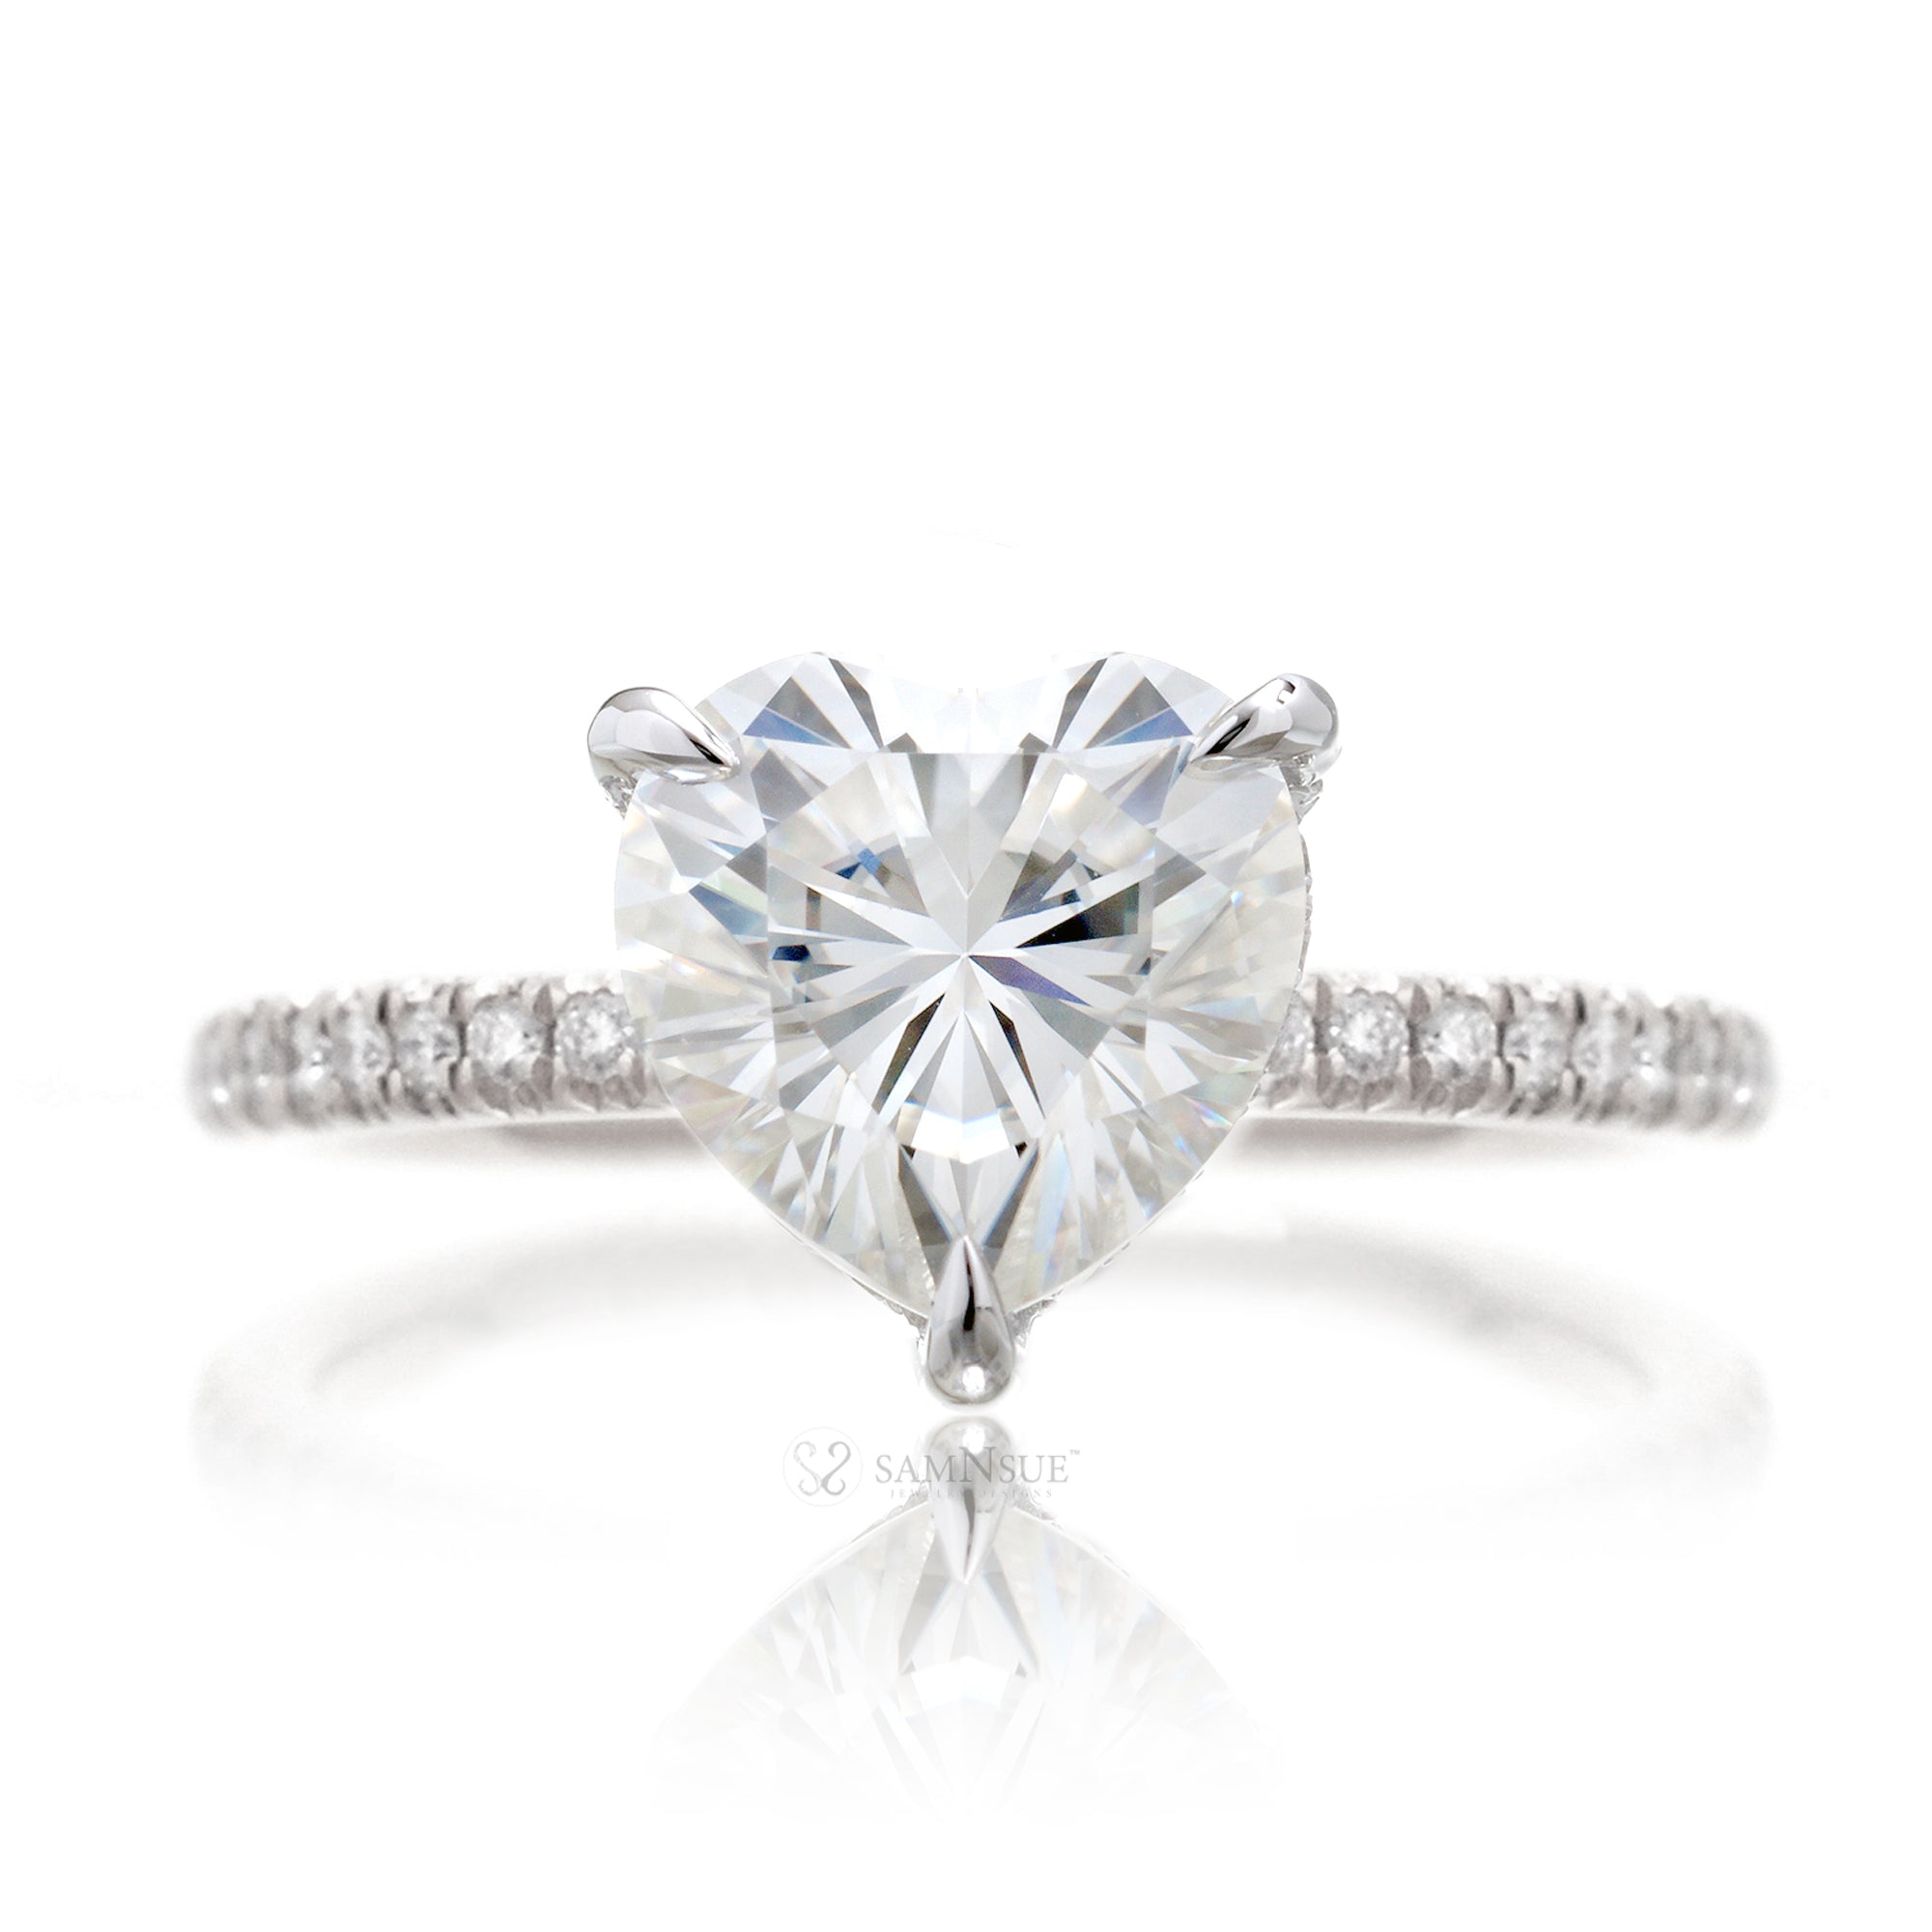 Heart shape moissanite diamond band engagement ring white gold - The Ava